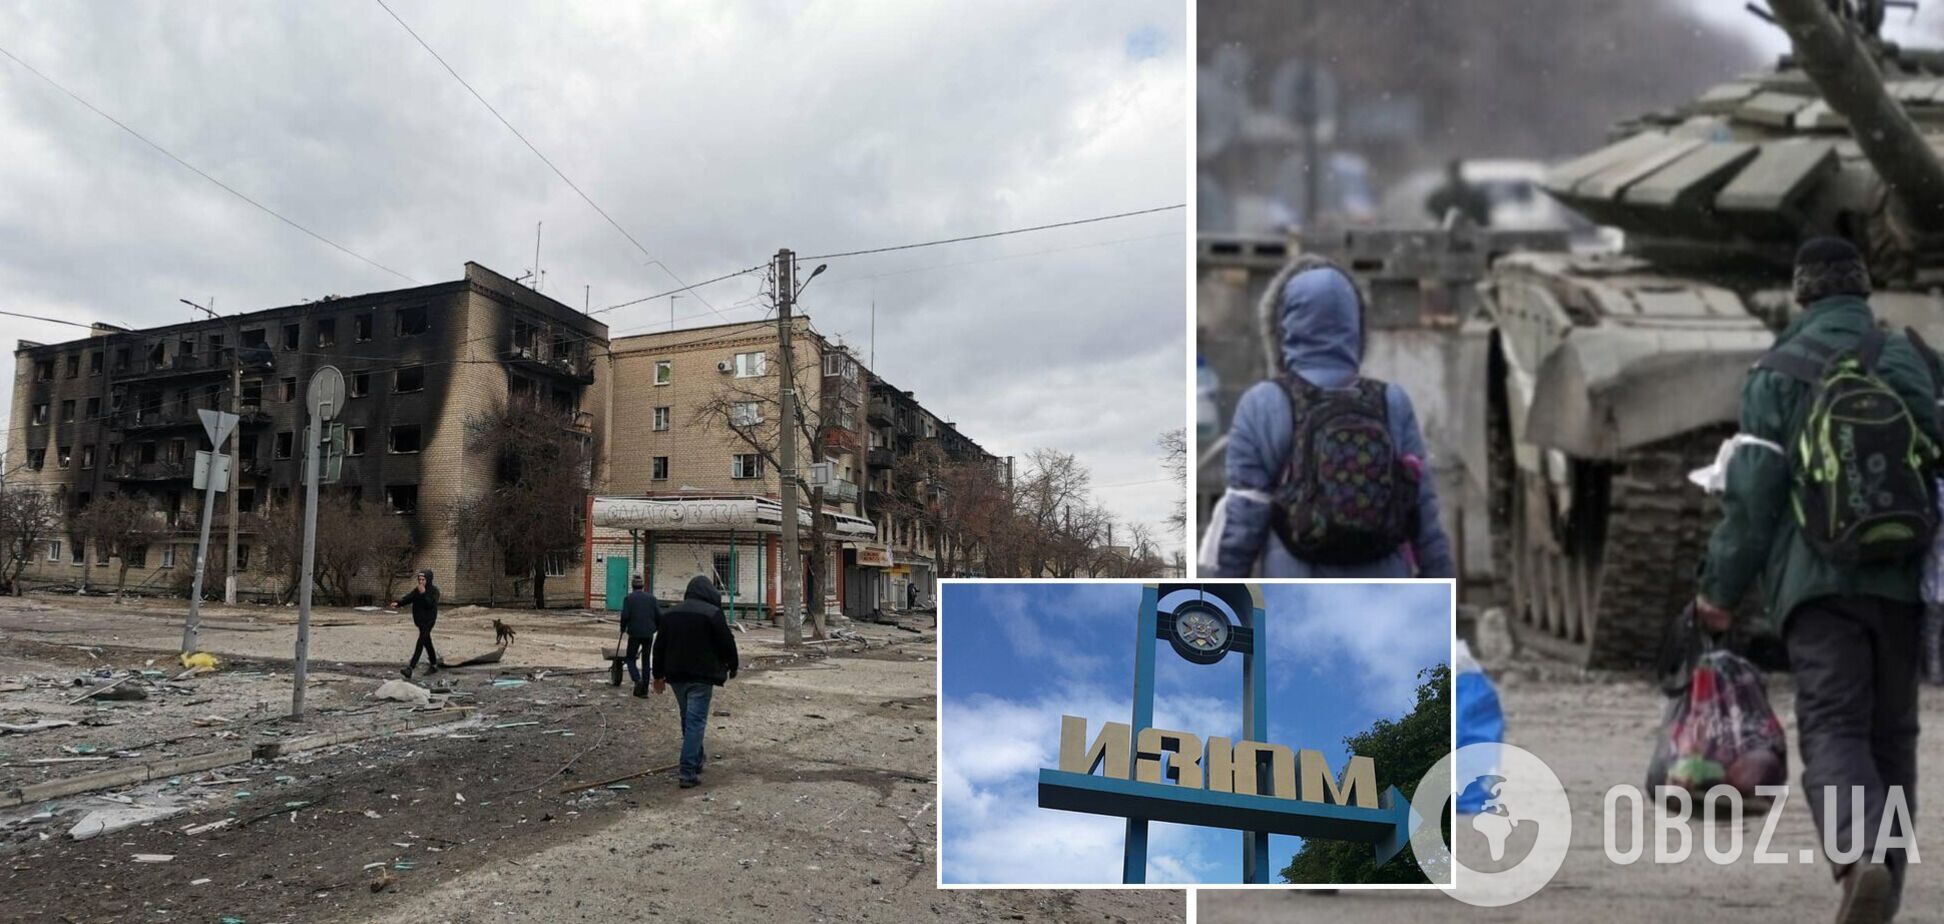 Часть депортированных в РФ жителей Изюма смогли вернуться в Украину через ЕС, – горсовет